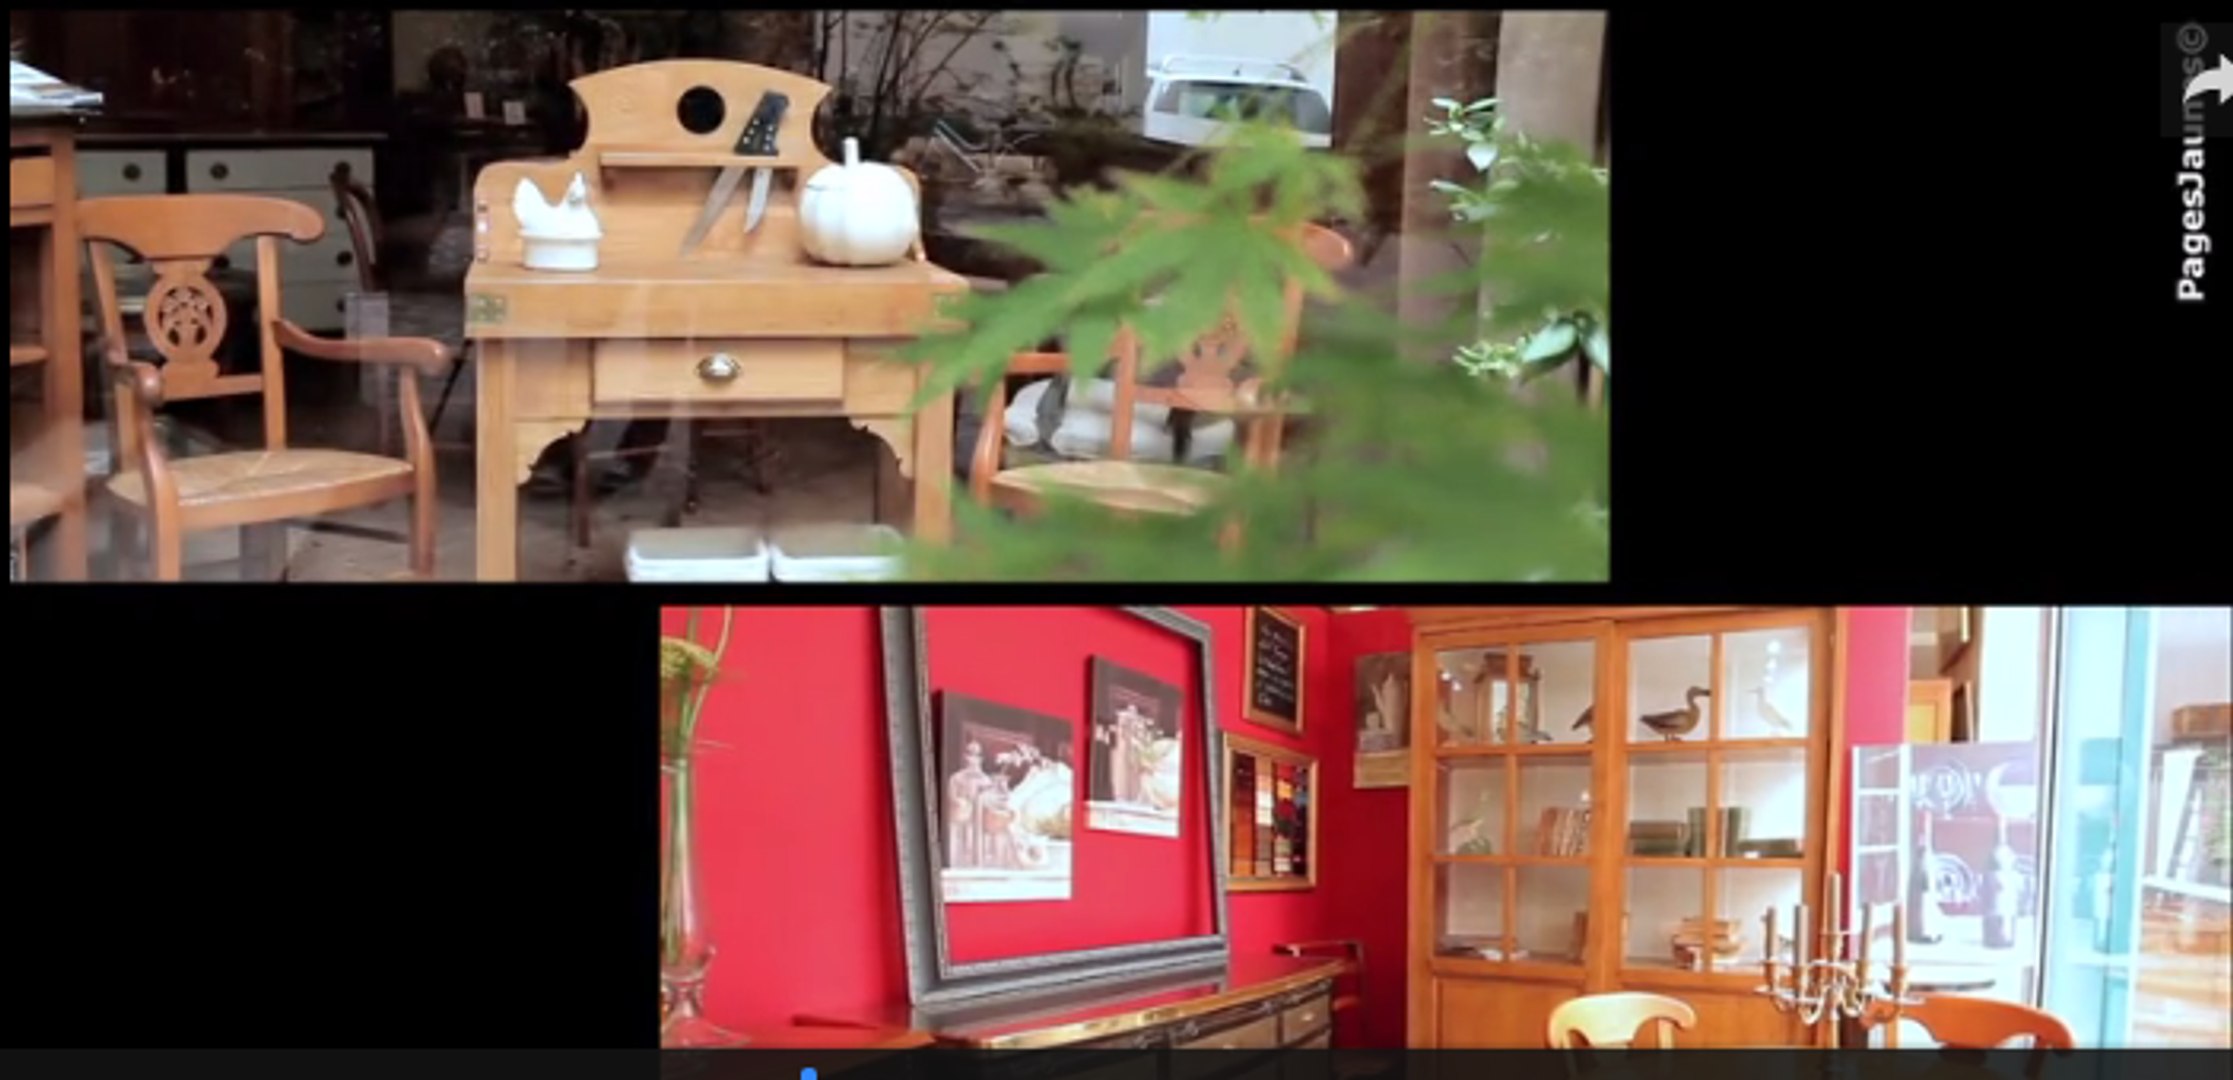 Strosser Meubles, vente de mobiliers à Paris 12 - Vidéo Dailymotion